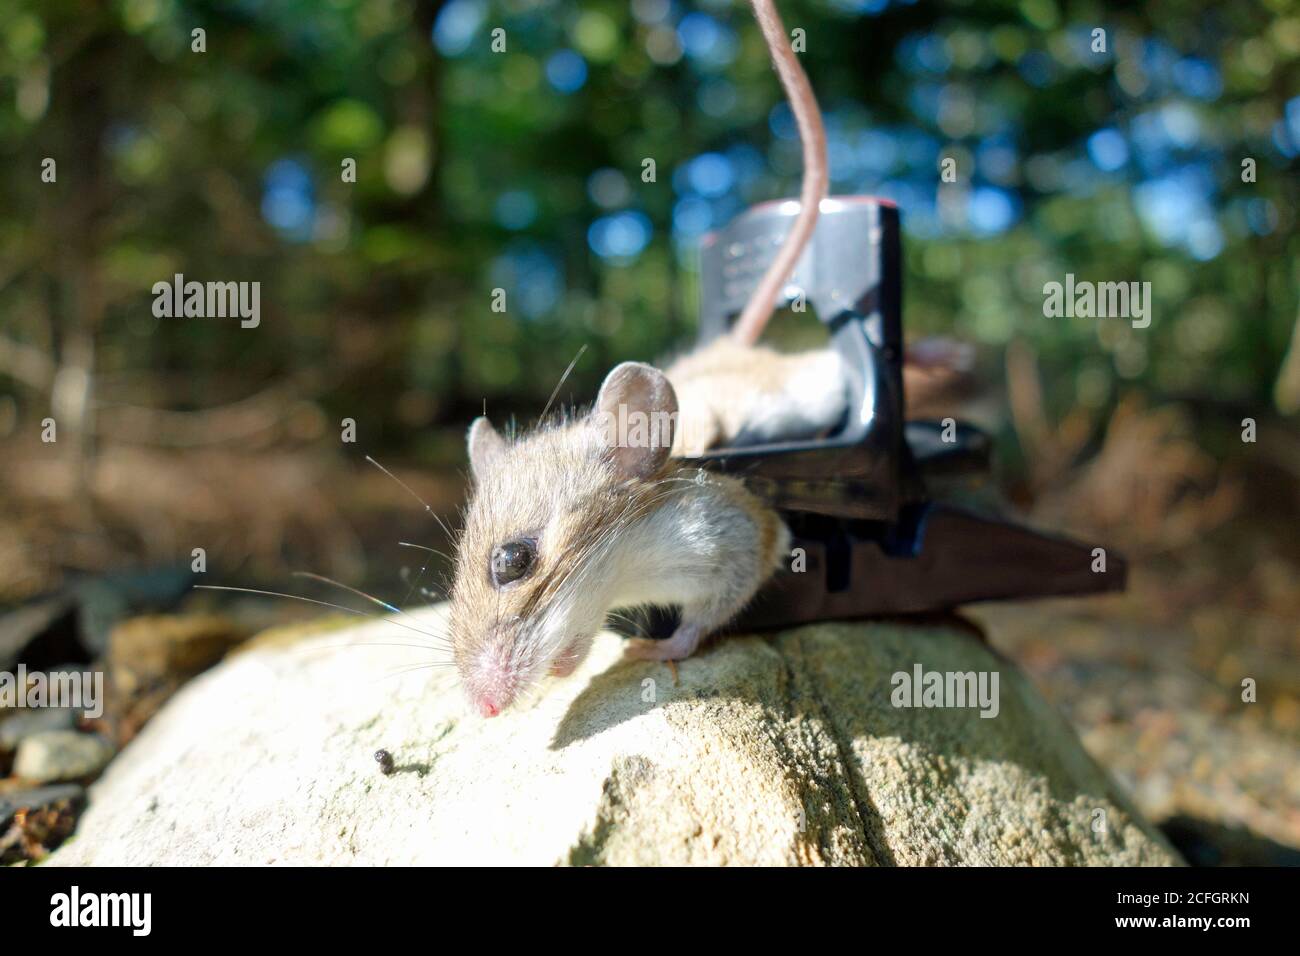 Ratón de dibujos animados muerto en una trampa para ratones